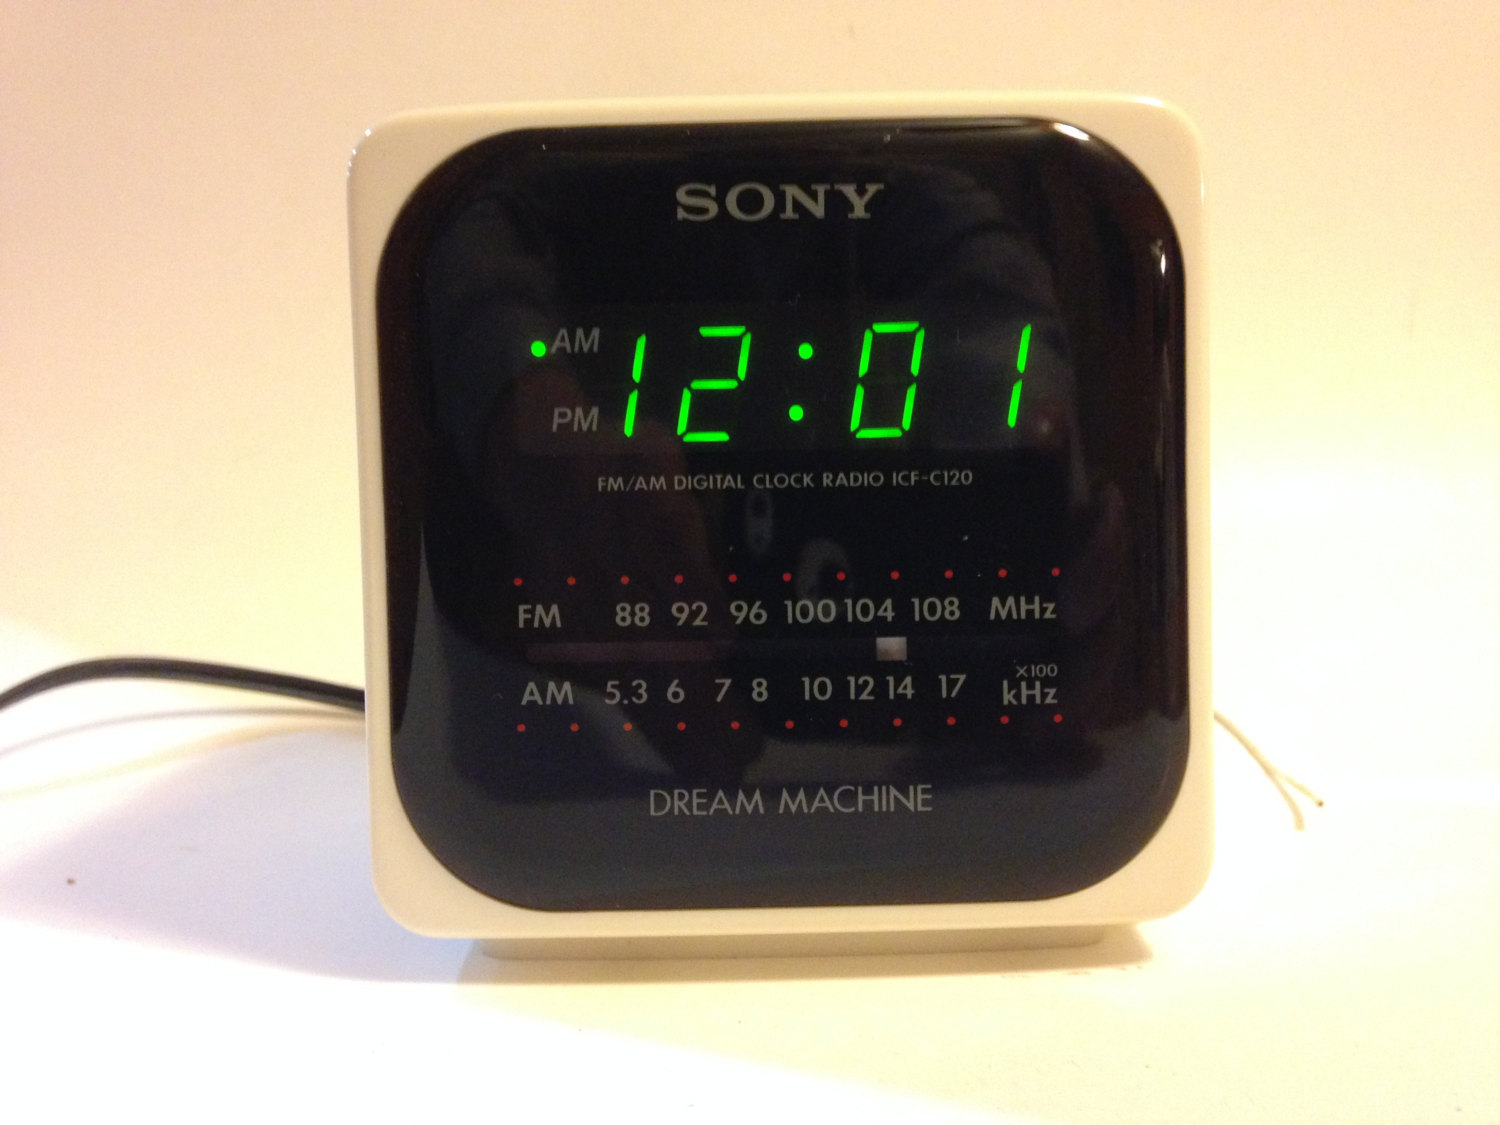 Sony cube clock radio instructions